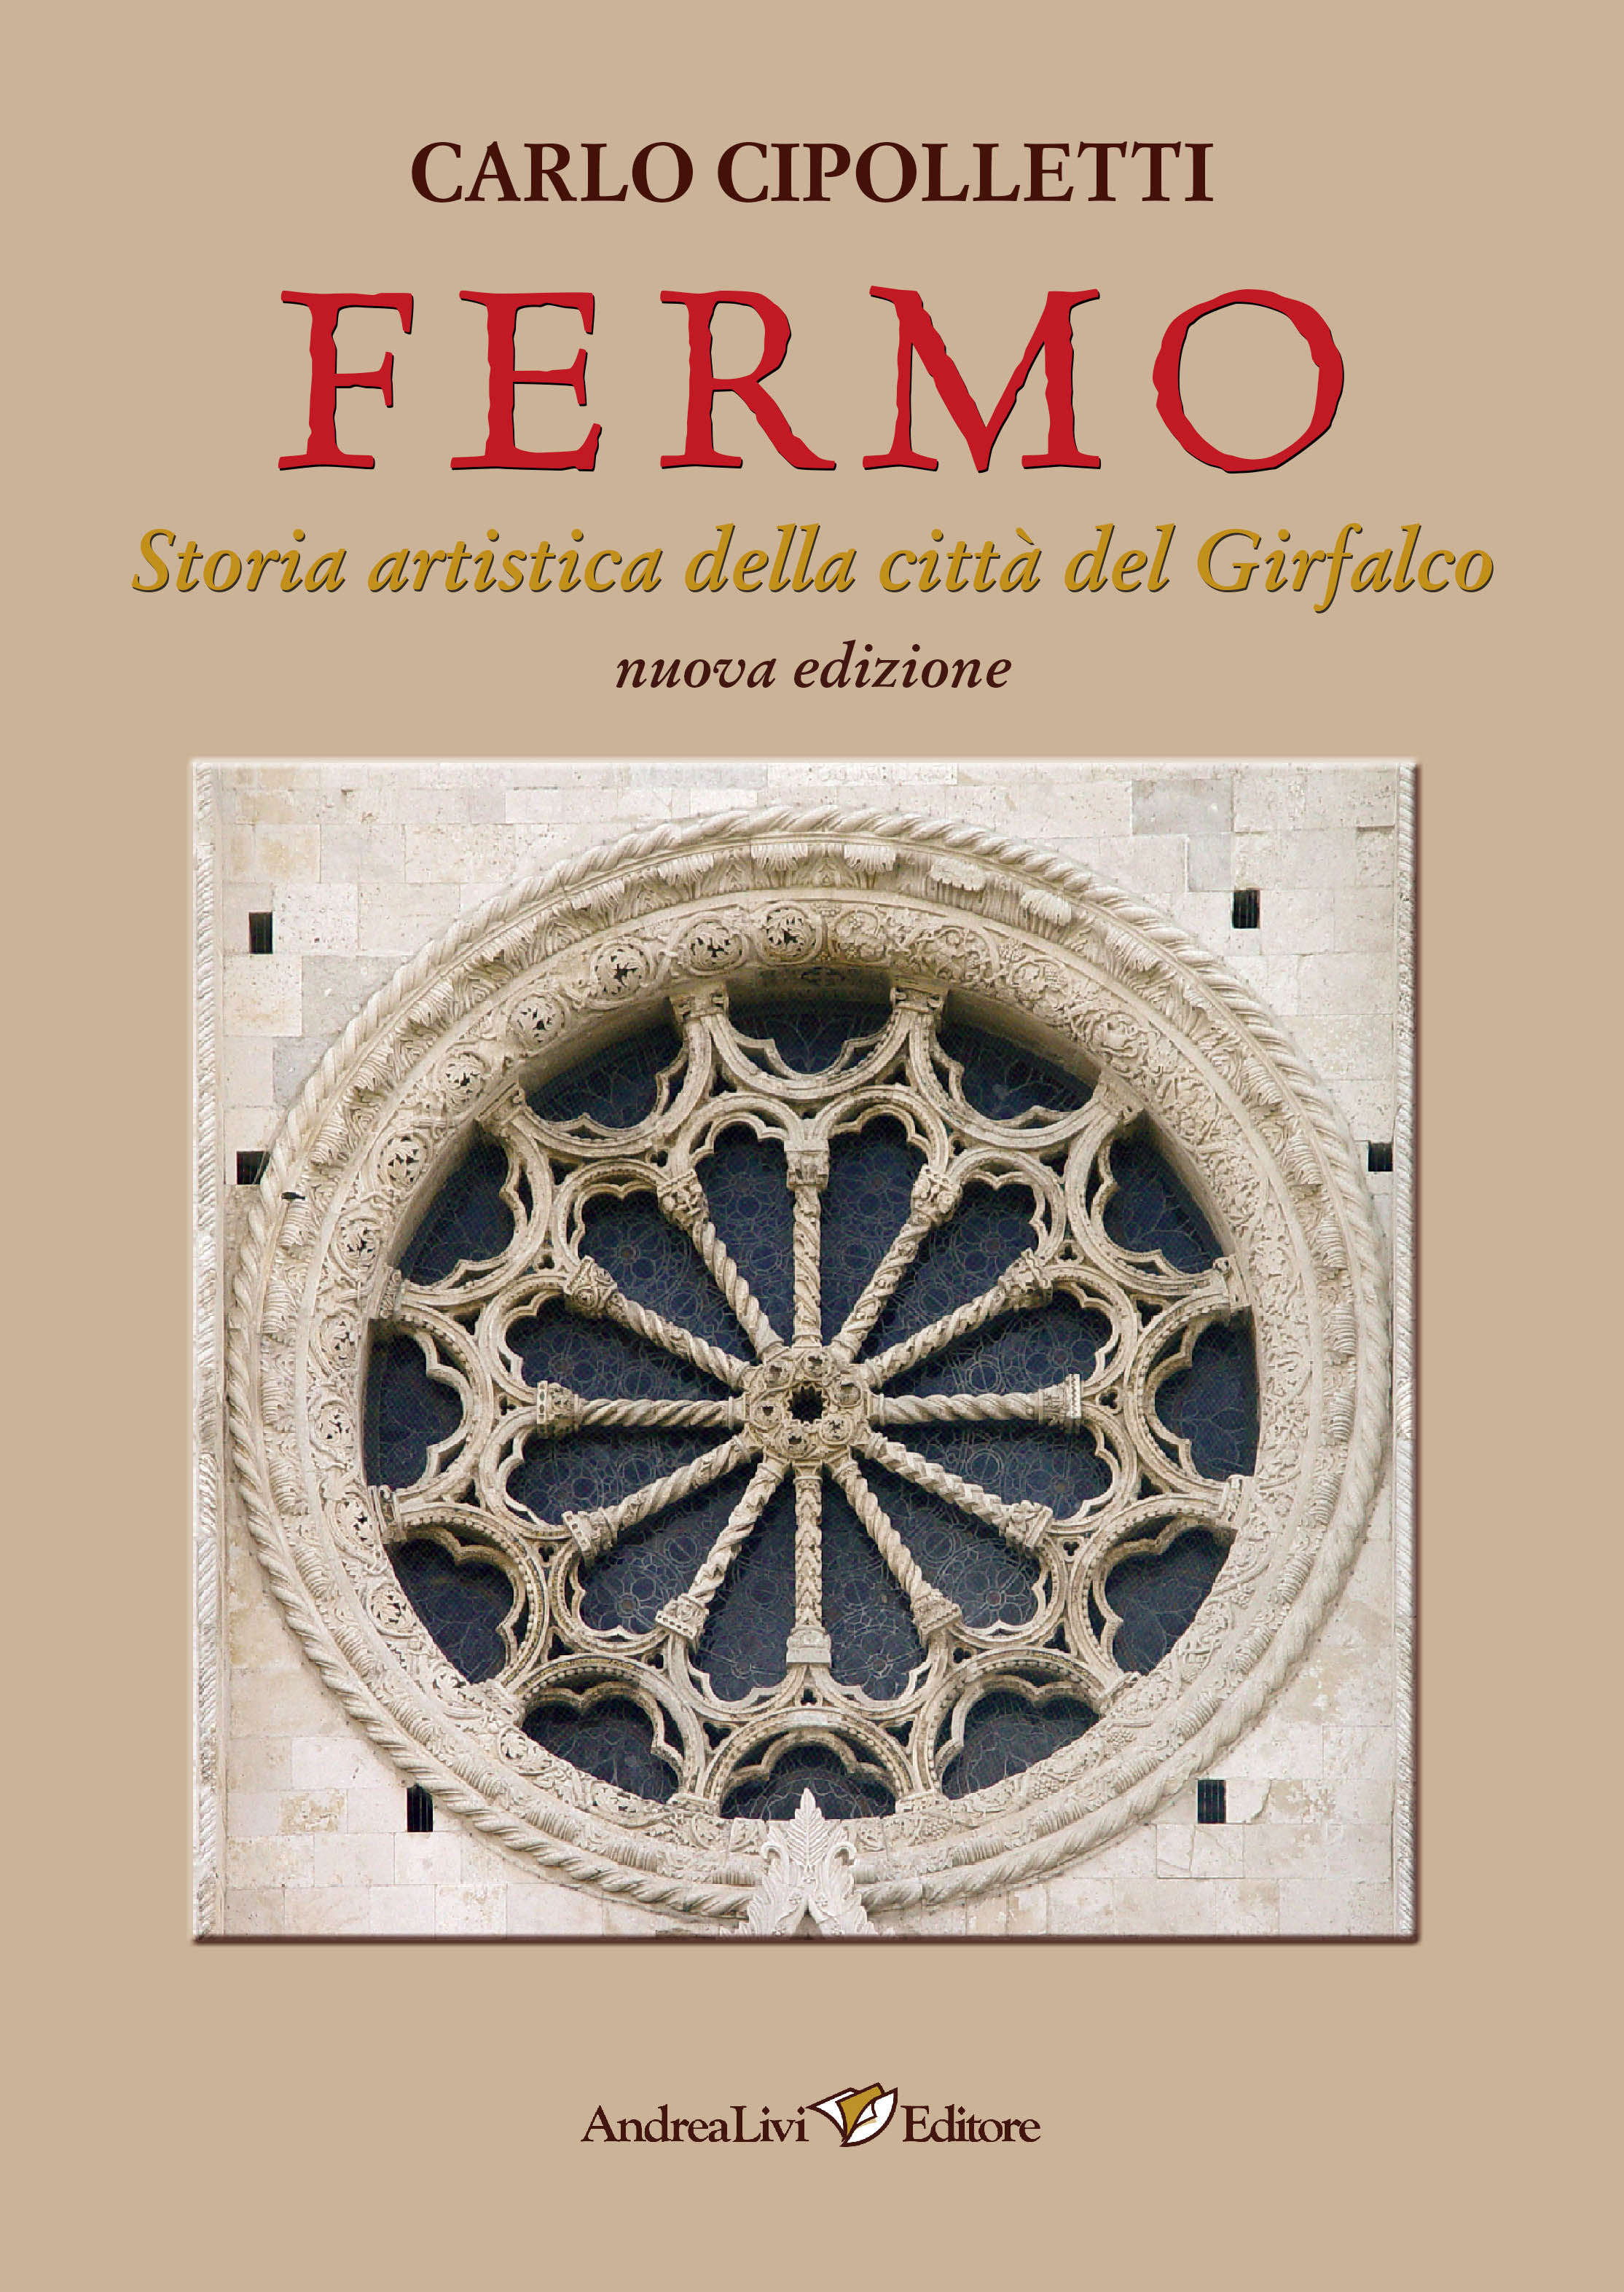 Carlo Cipolletti, Fermo. Storia artistica della città del Girfalco.